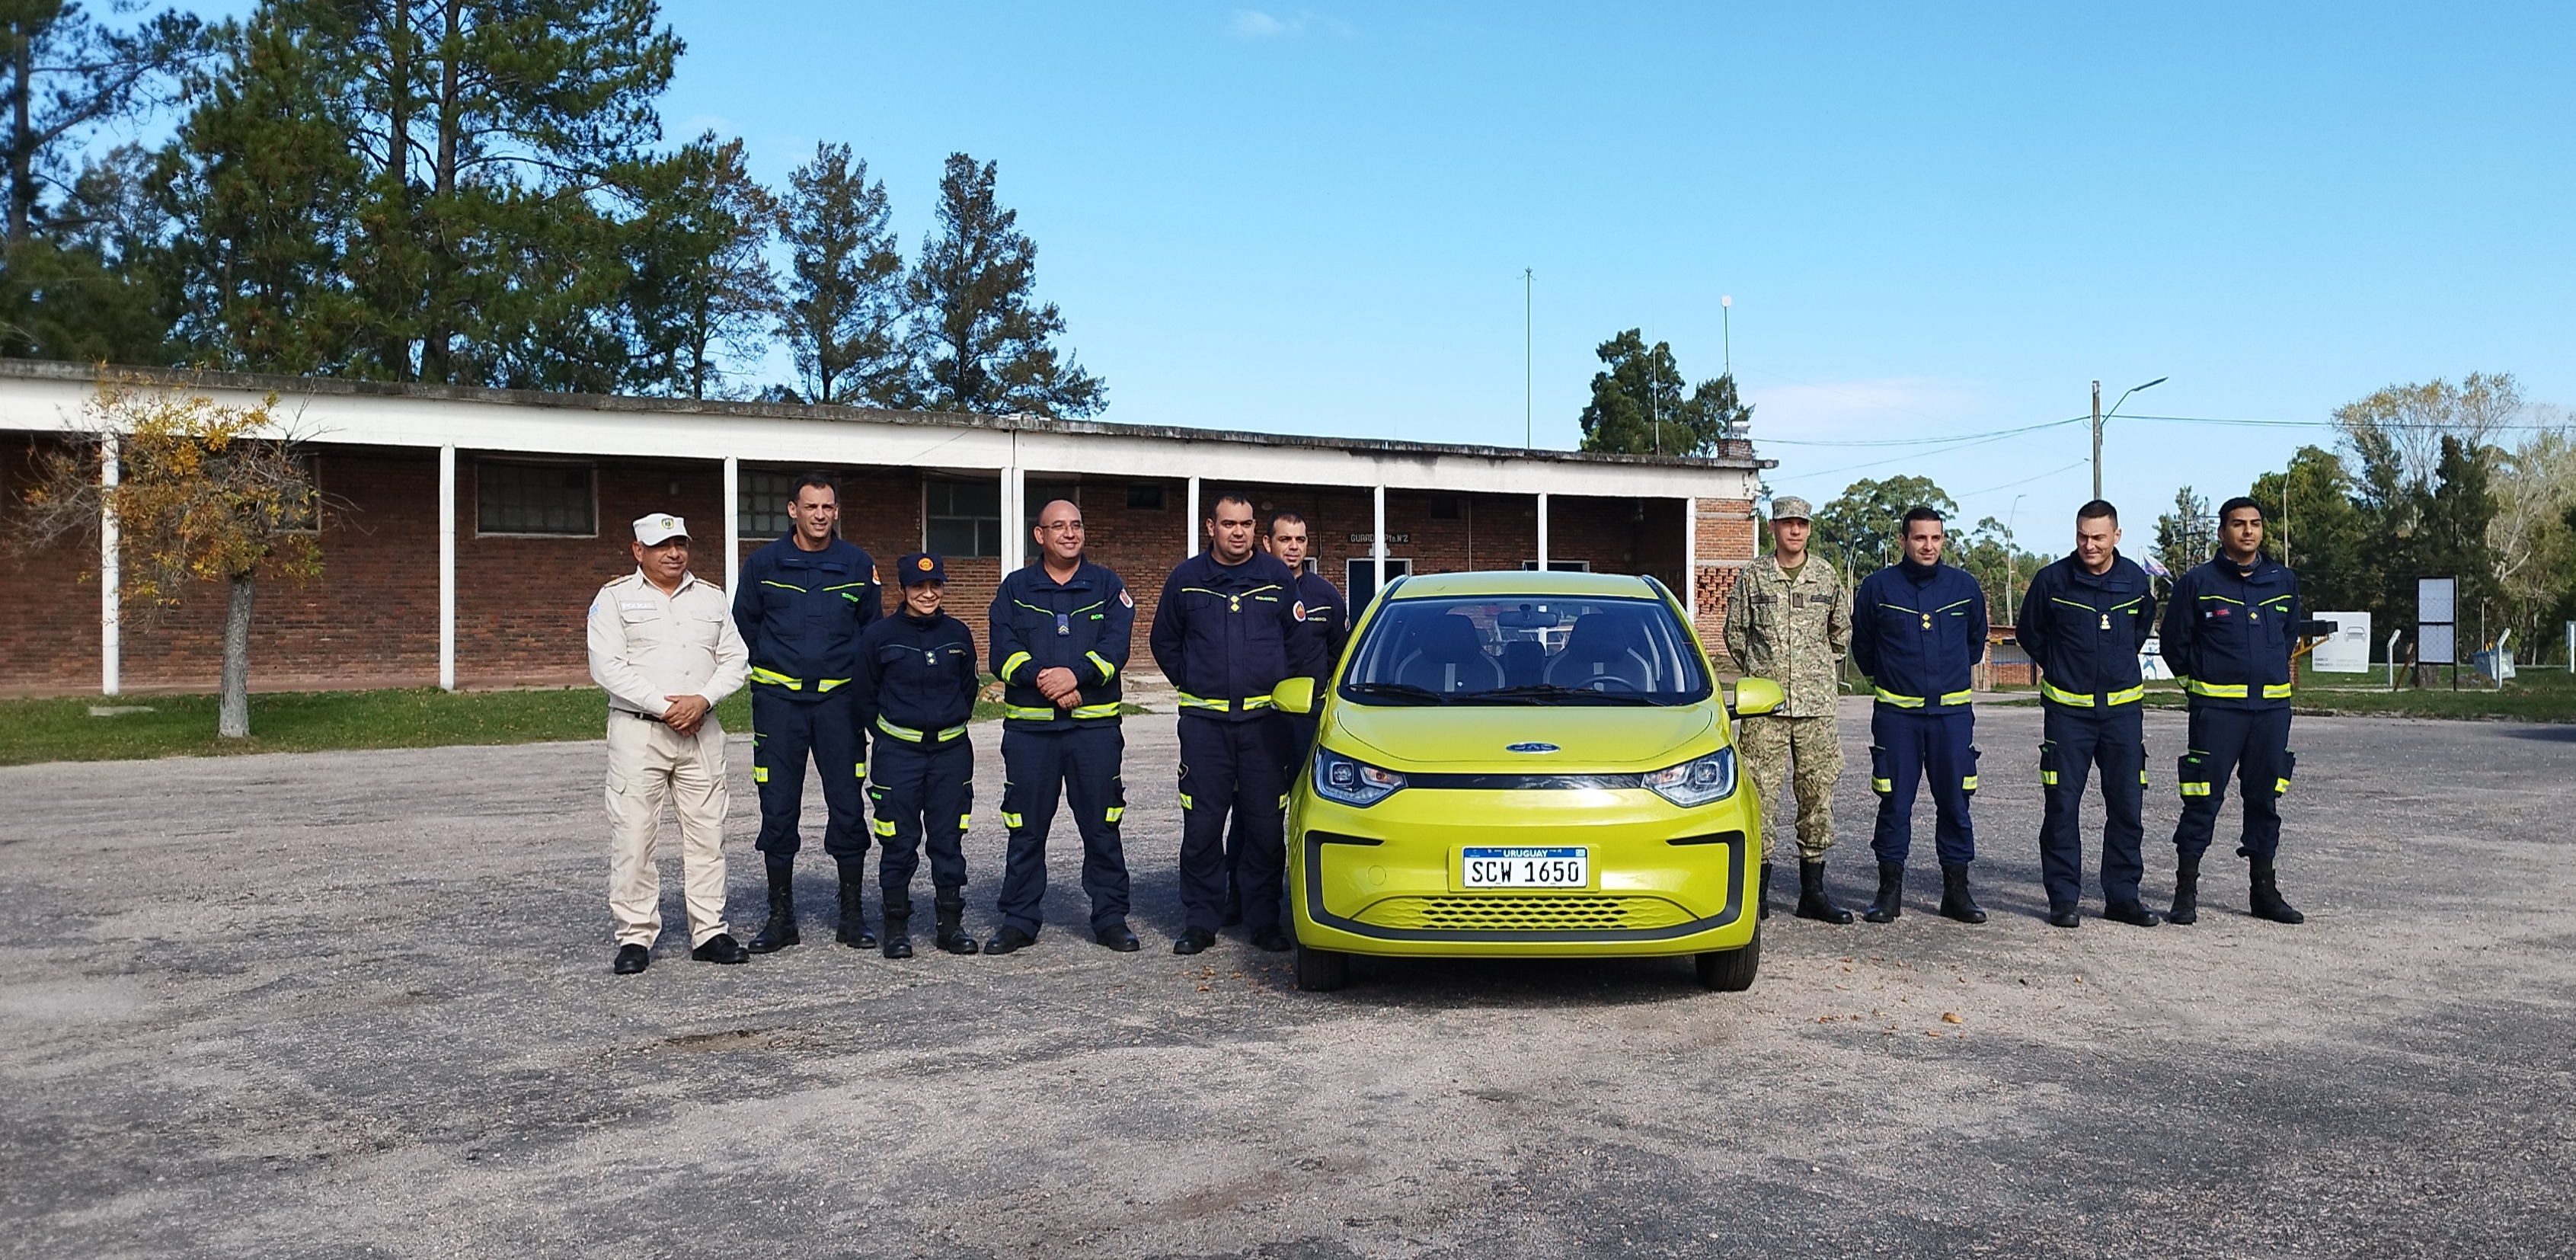 IMG_20230511_132528.jpg - El pasado jueves 11 de mayo culminó la &#034;Capacitación para bomberos sobre manejo de incidentes relacionados con la movilidad eléctrica&#034; en donde se capacitaron a 25 bomberos en la Base Aérea de Santa Bernardina del departamento de Durazno. Esta capacitación es la continuación del primer curso regional que organizó la plataforma MOVE del Programa de la Naciones Unidas para el Medio Ambiente a finales de 2022 en Paraguay, donde participaron y se formaron dos bomberos instructores de Uruguay.